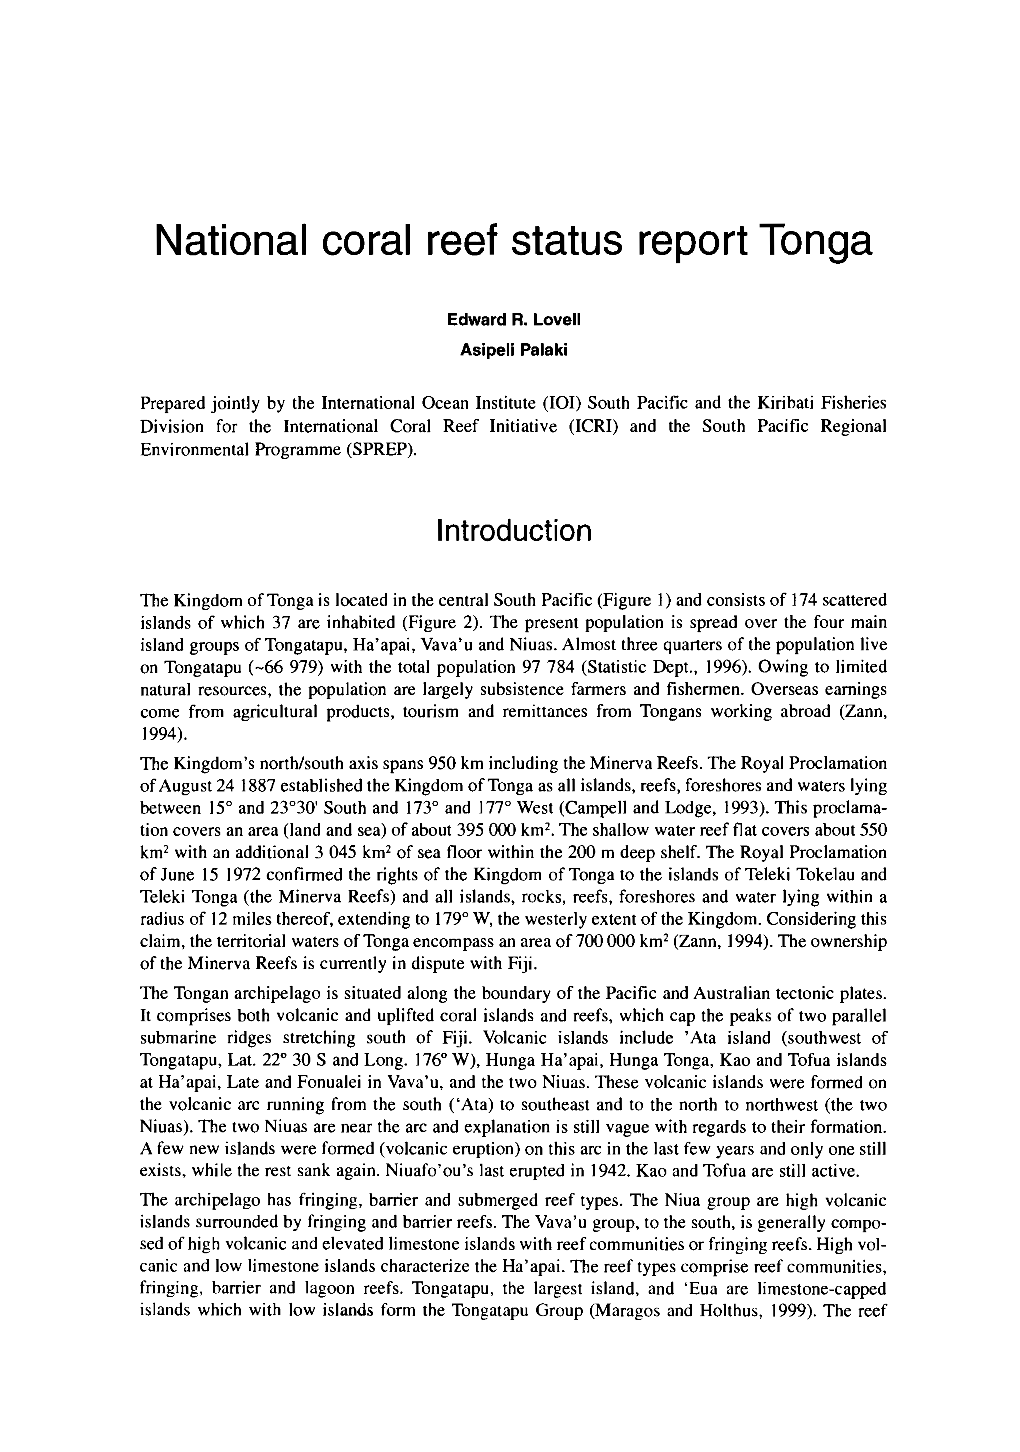 National Coral Reef Status Report Tonga